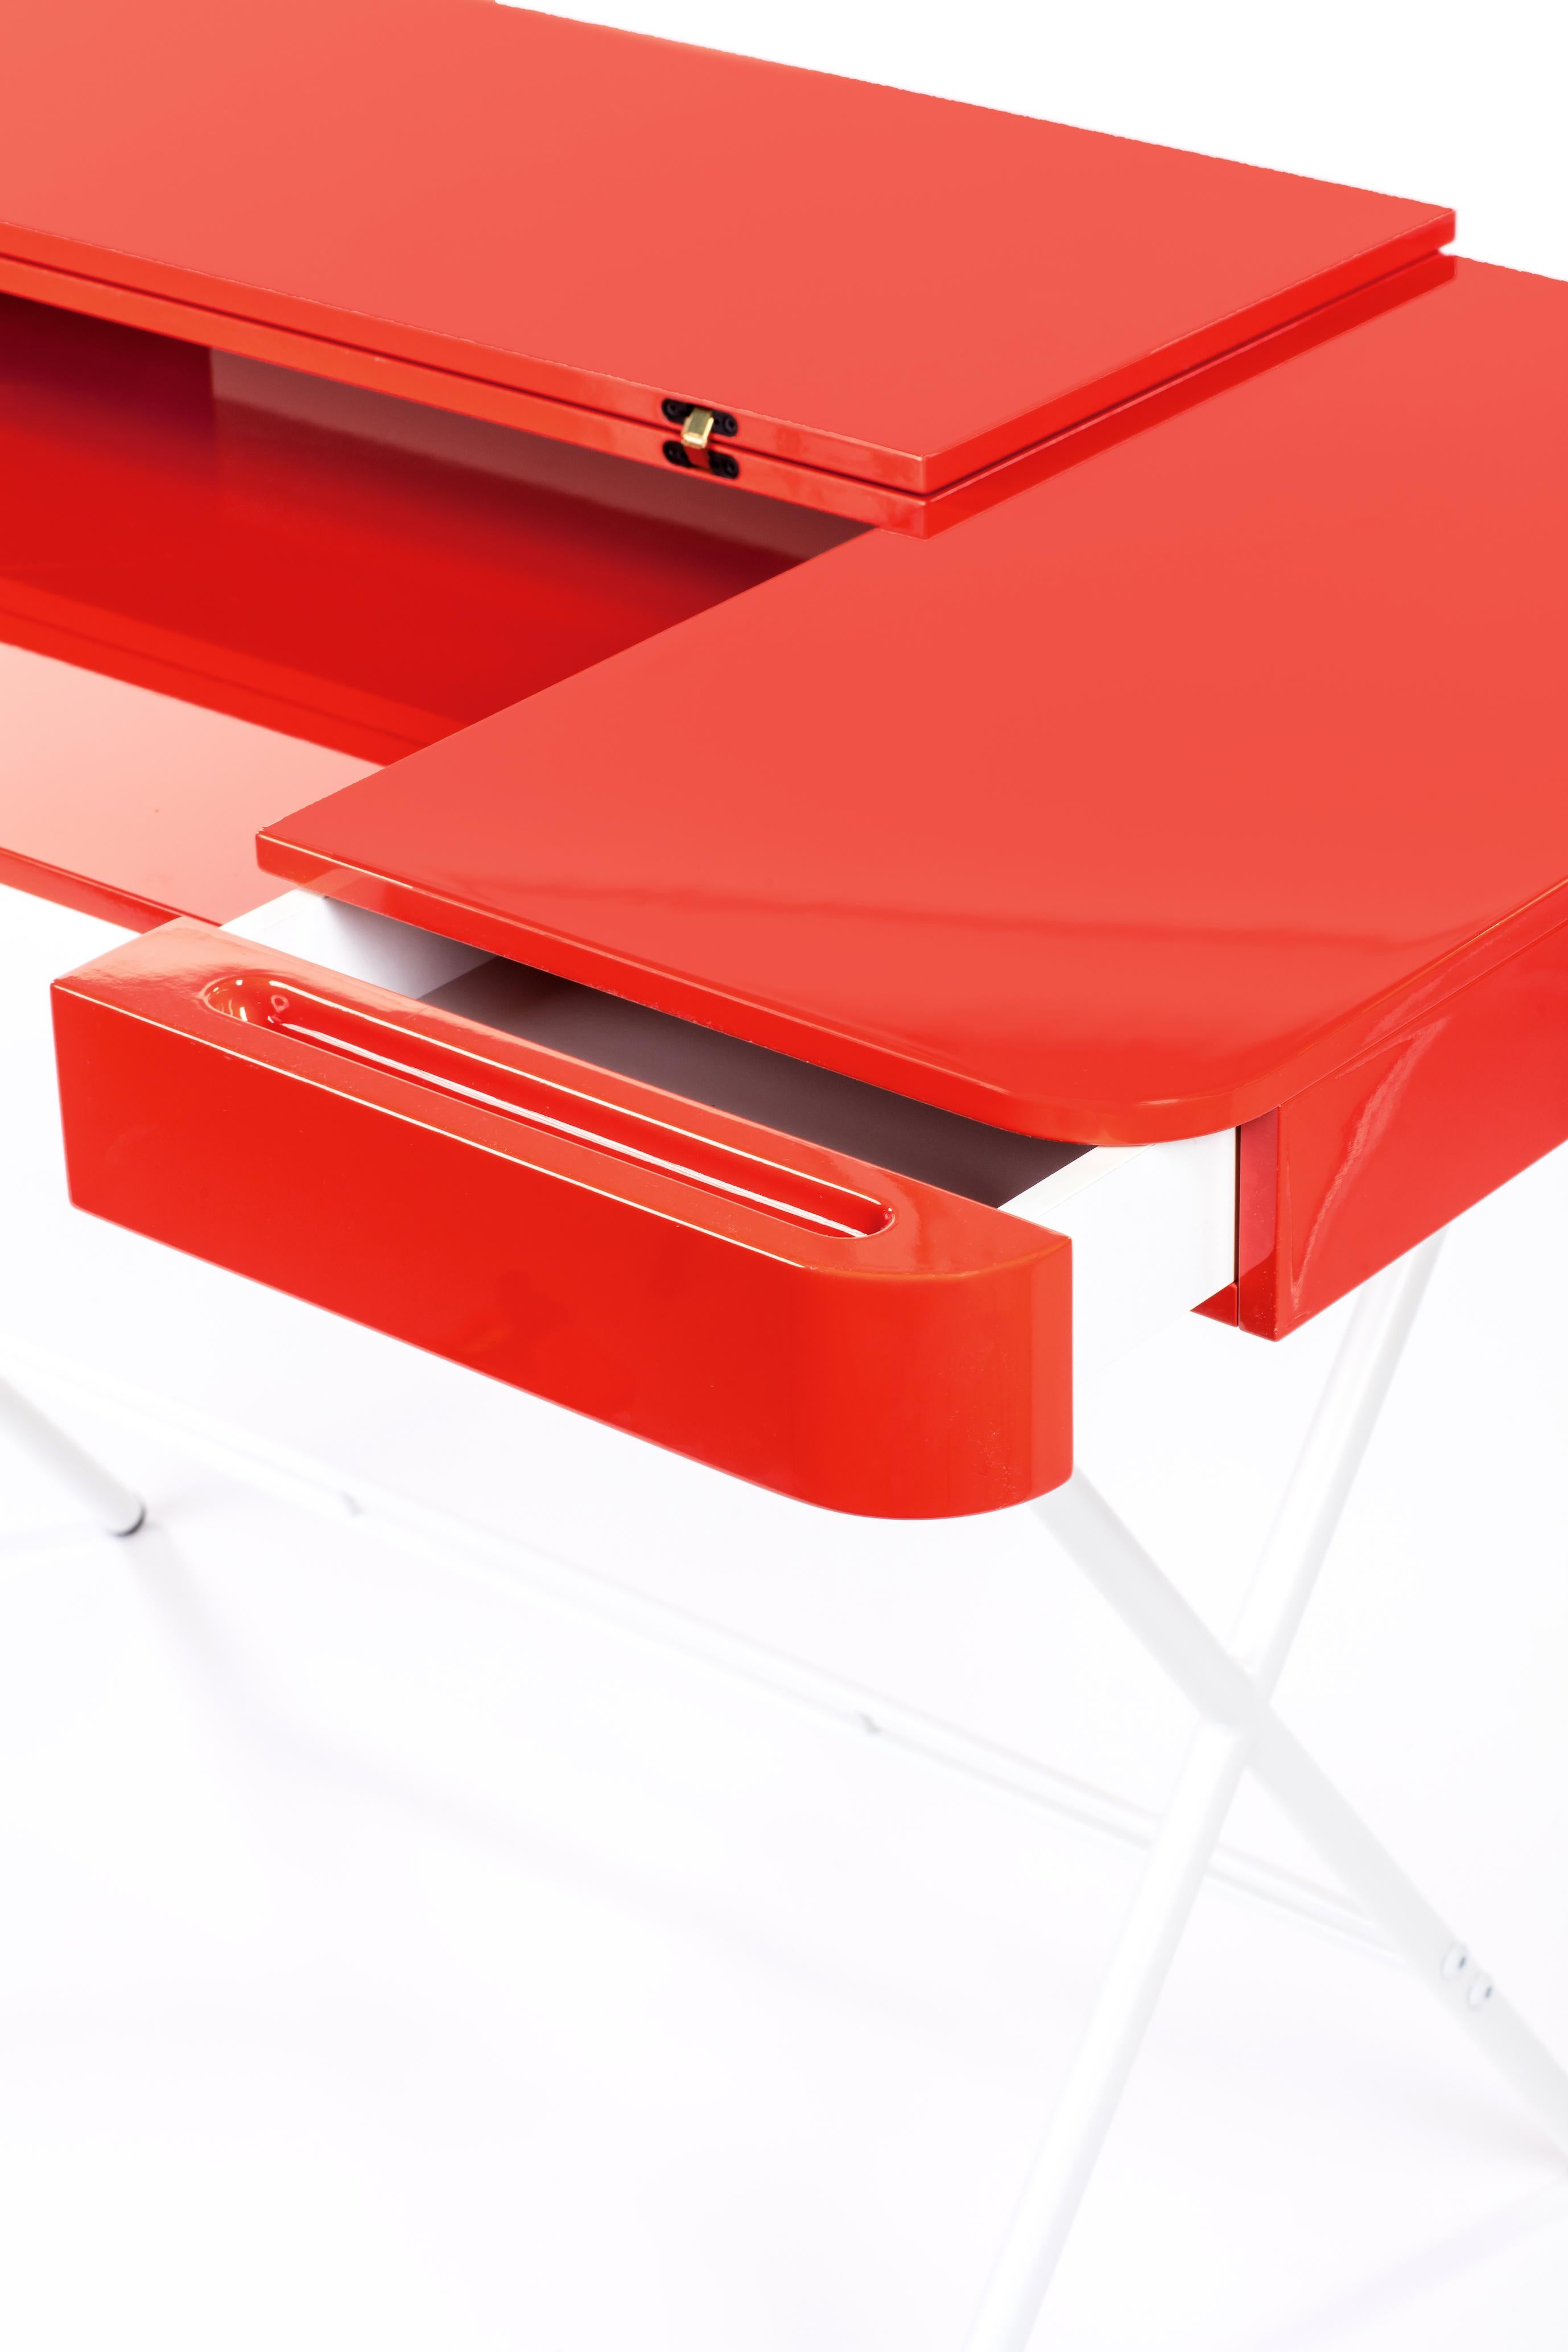 Contemporary Adentro Cosimo Desk design Marco Zanuso jr Red glossy top & white base.  For Sale